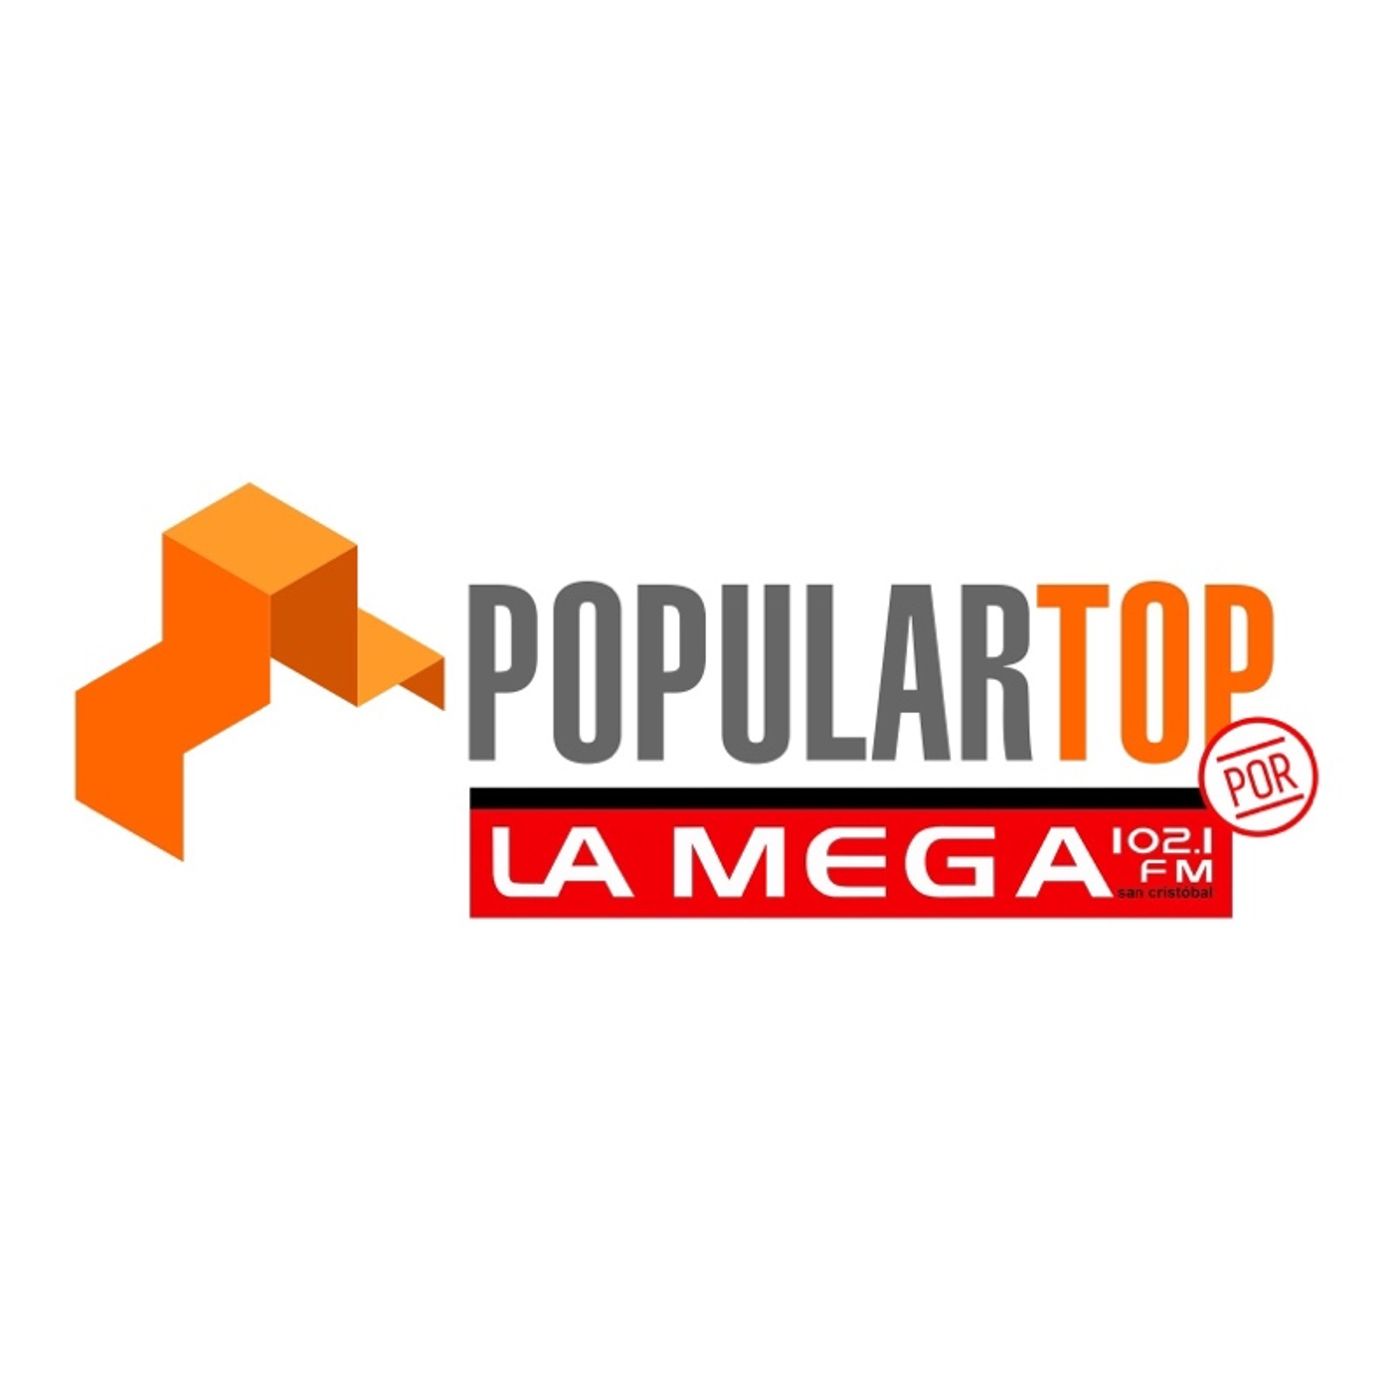 POPULARTOP por La Mega